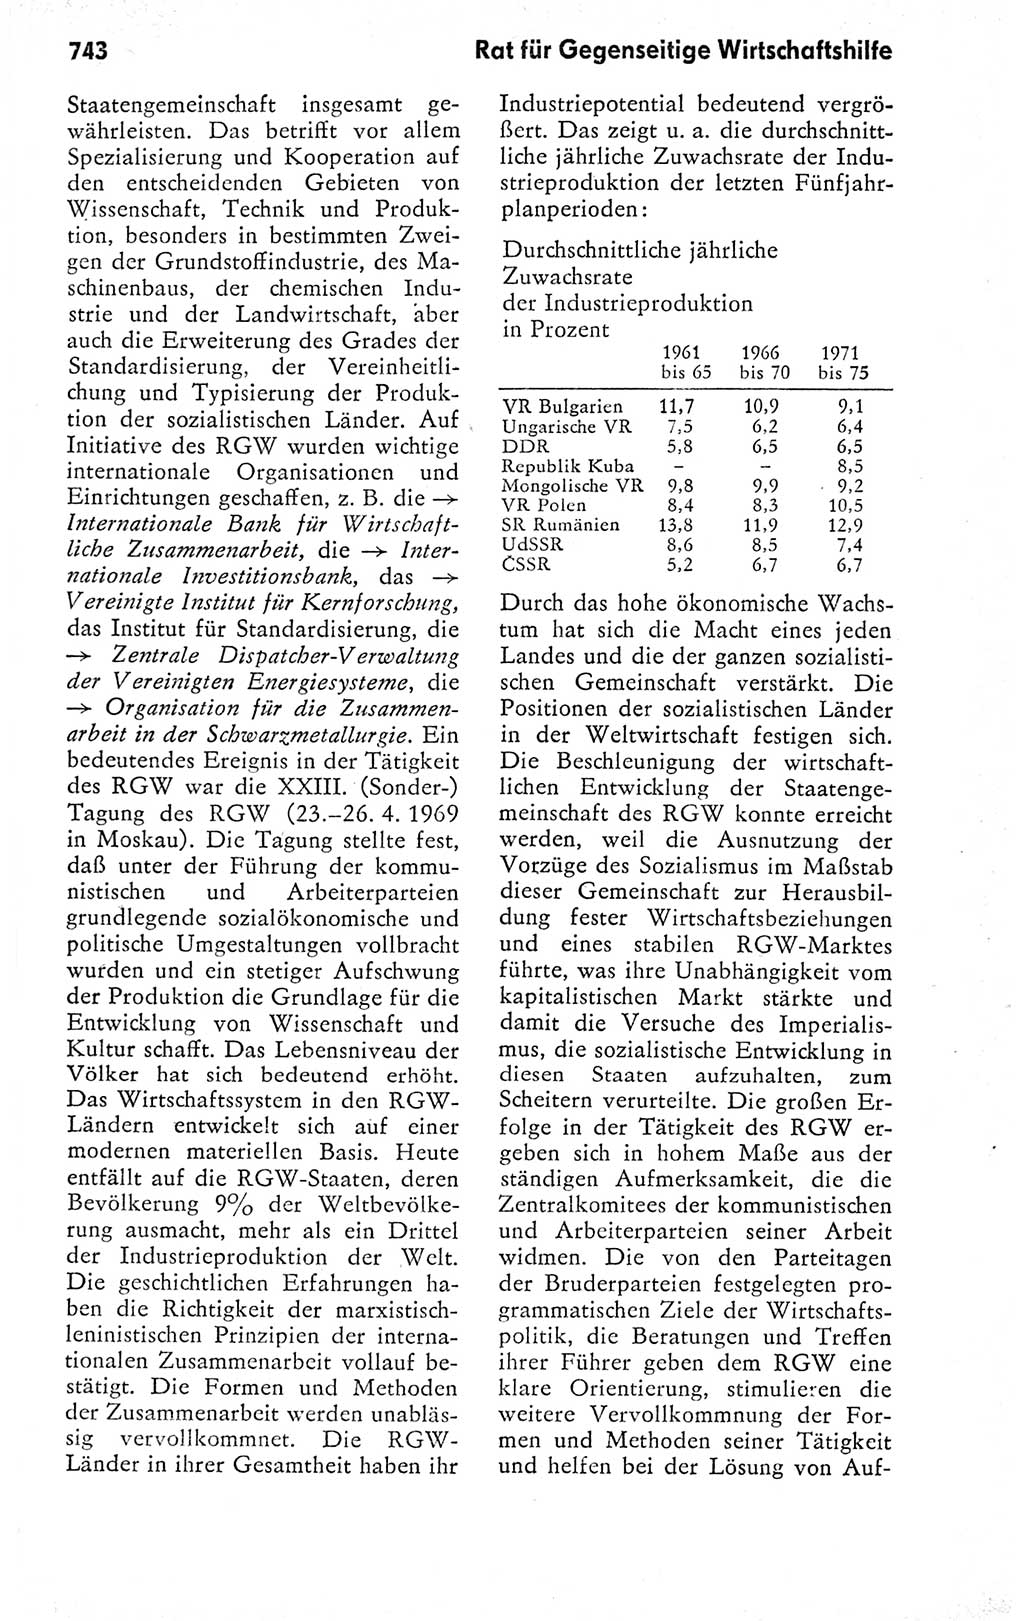 Kleines politisches Wörterbuch [Deutsche Demokratische Republik (DDR)] 1978, Seite 743 (Kl. pol. Wb. DDR 1978, S. 743)